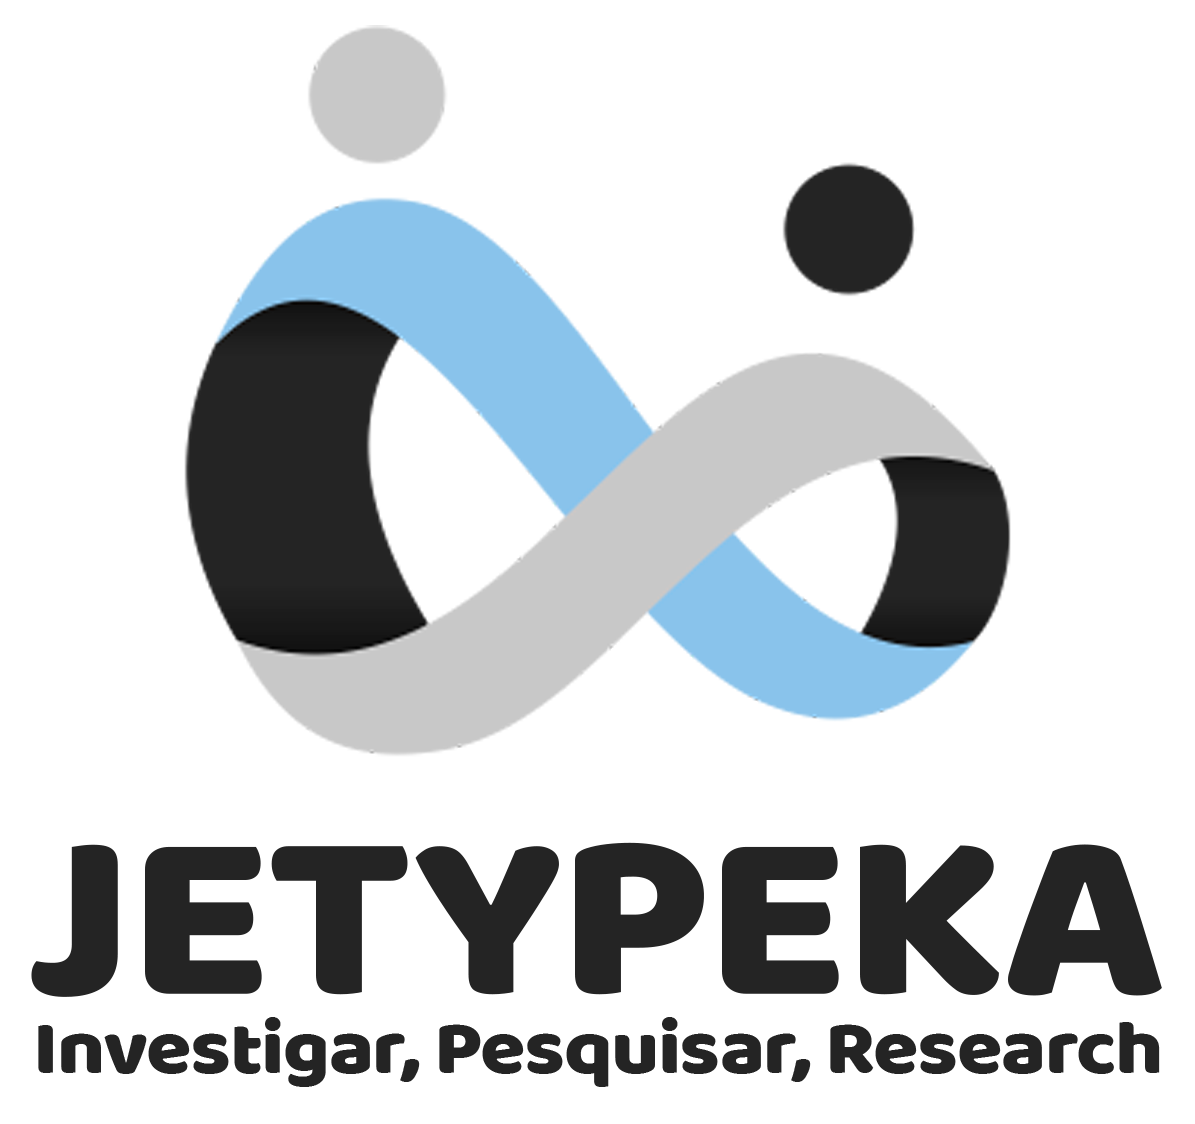 Revista Jetypeka